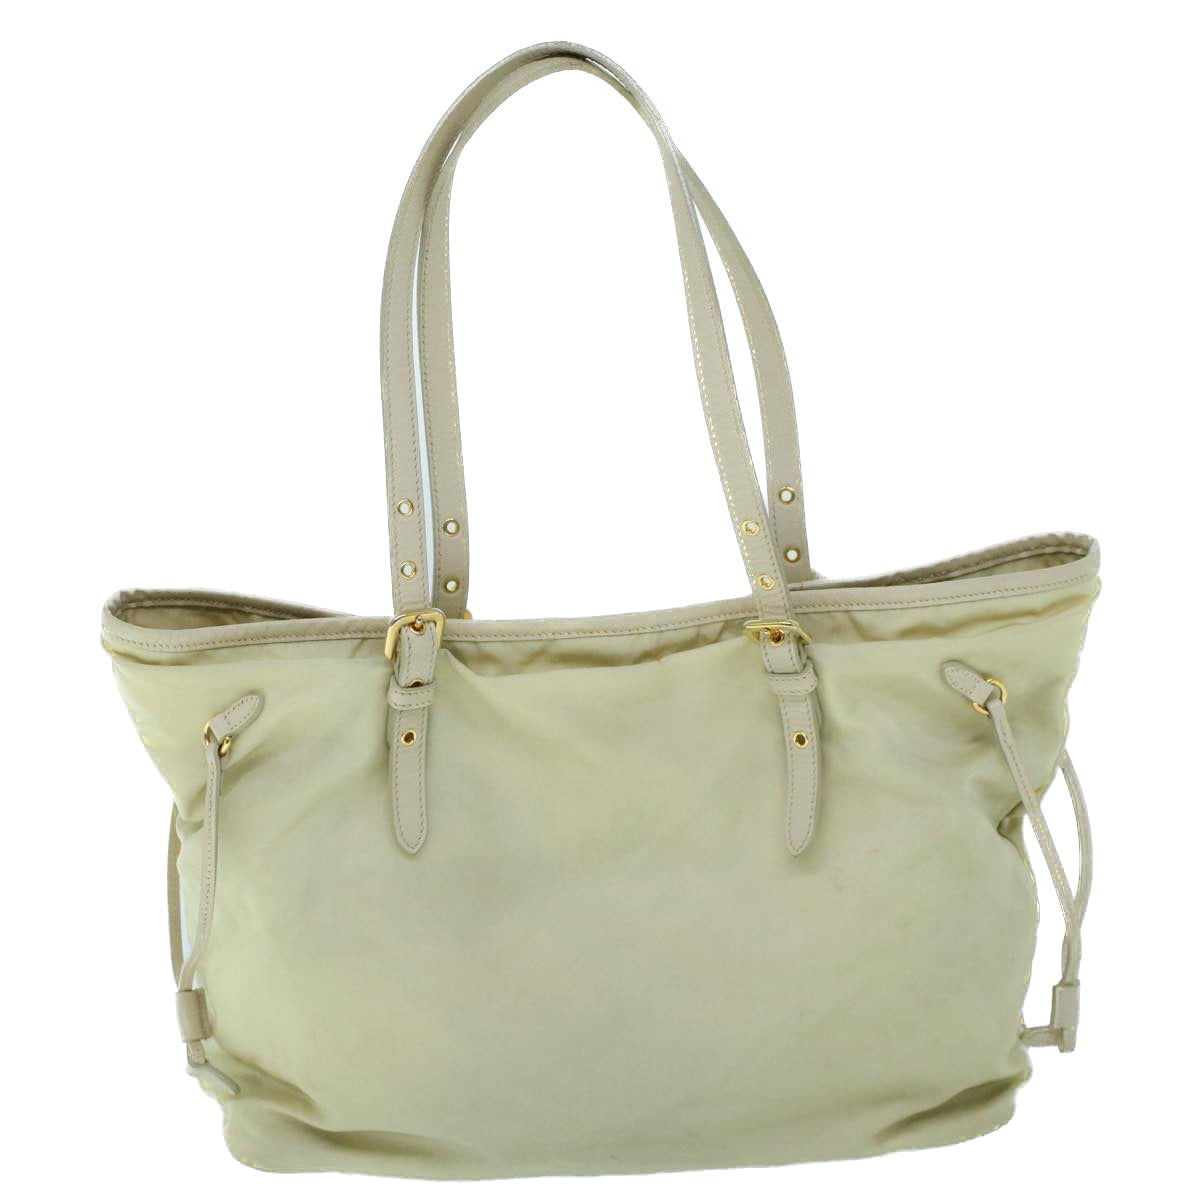 PRADA Tote Bag Nylon Leather Cream Auth 53846 - 0